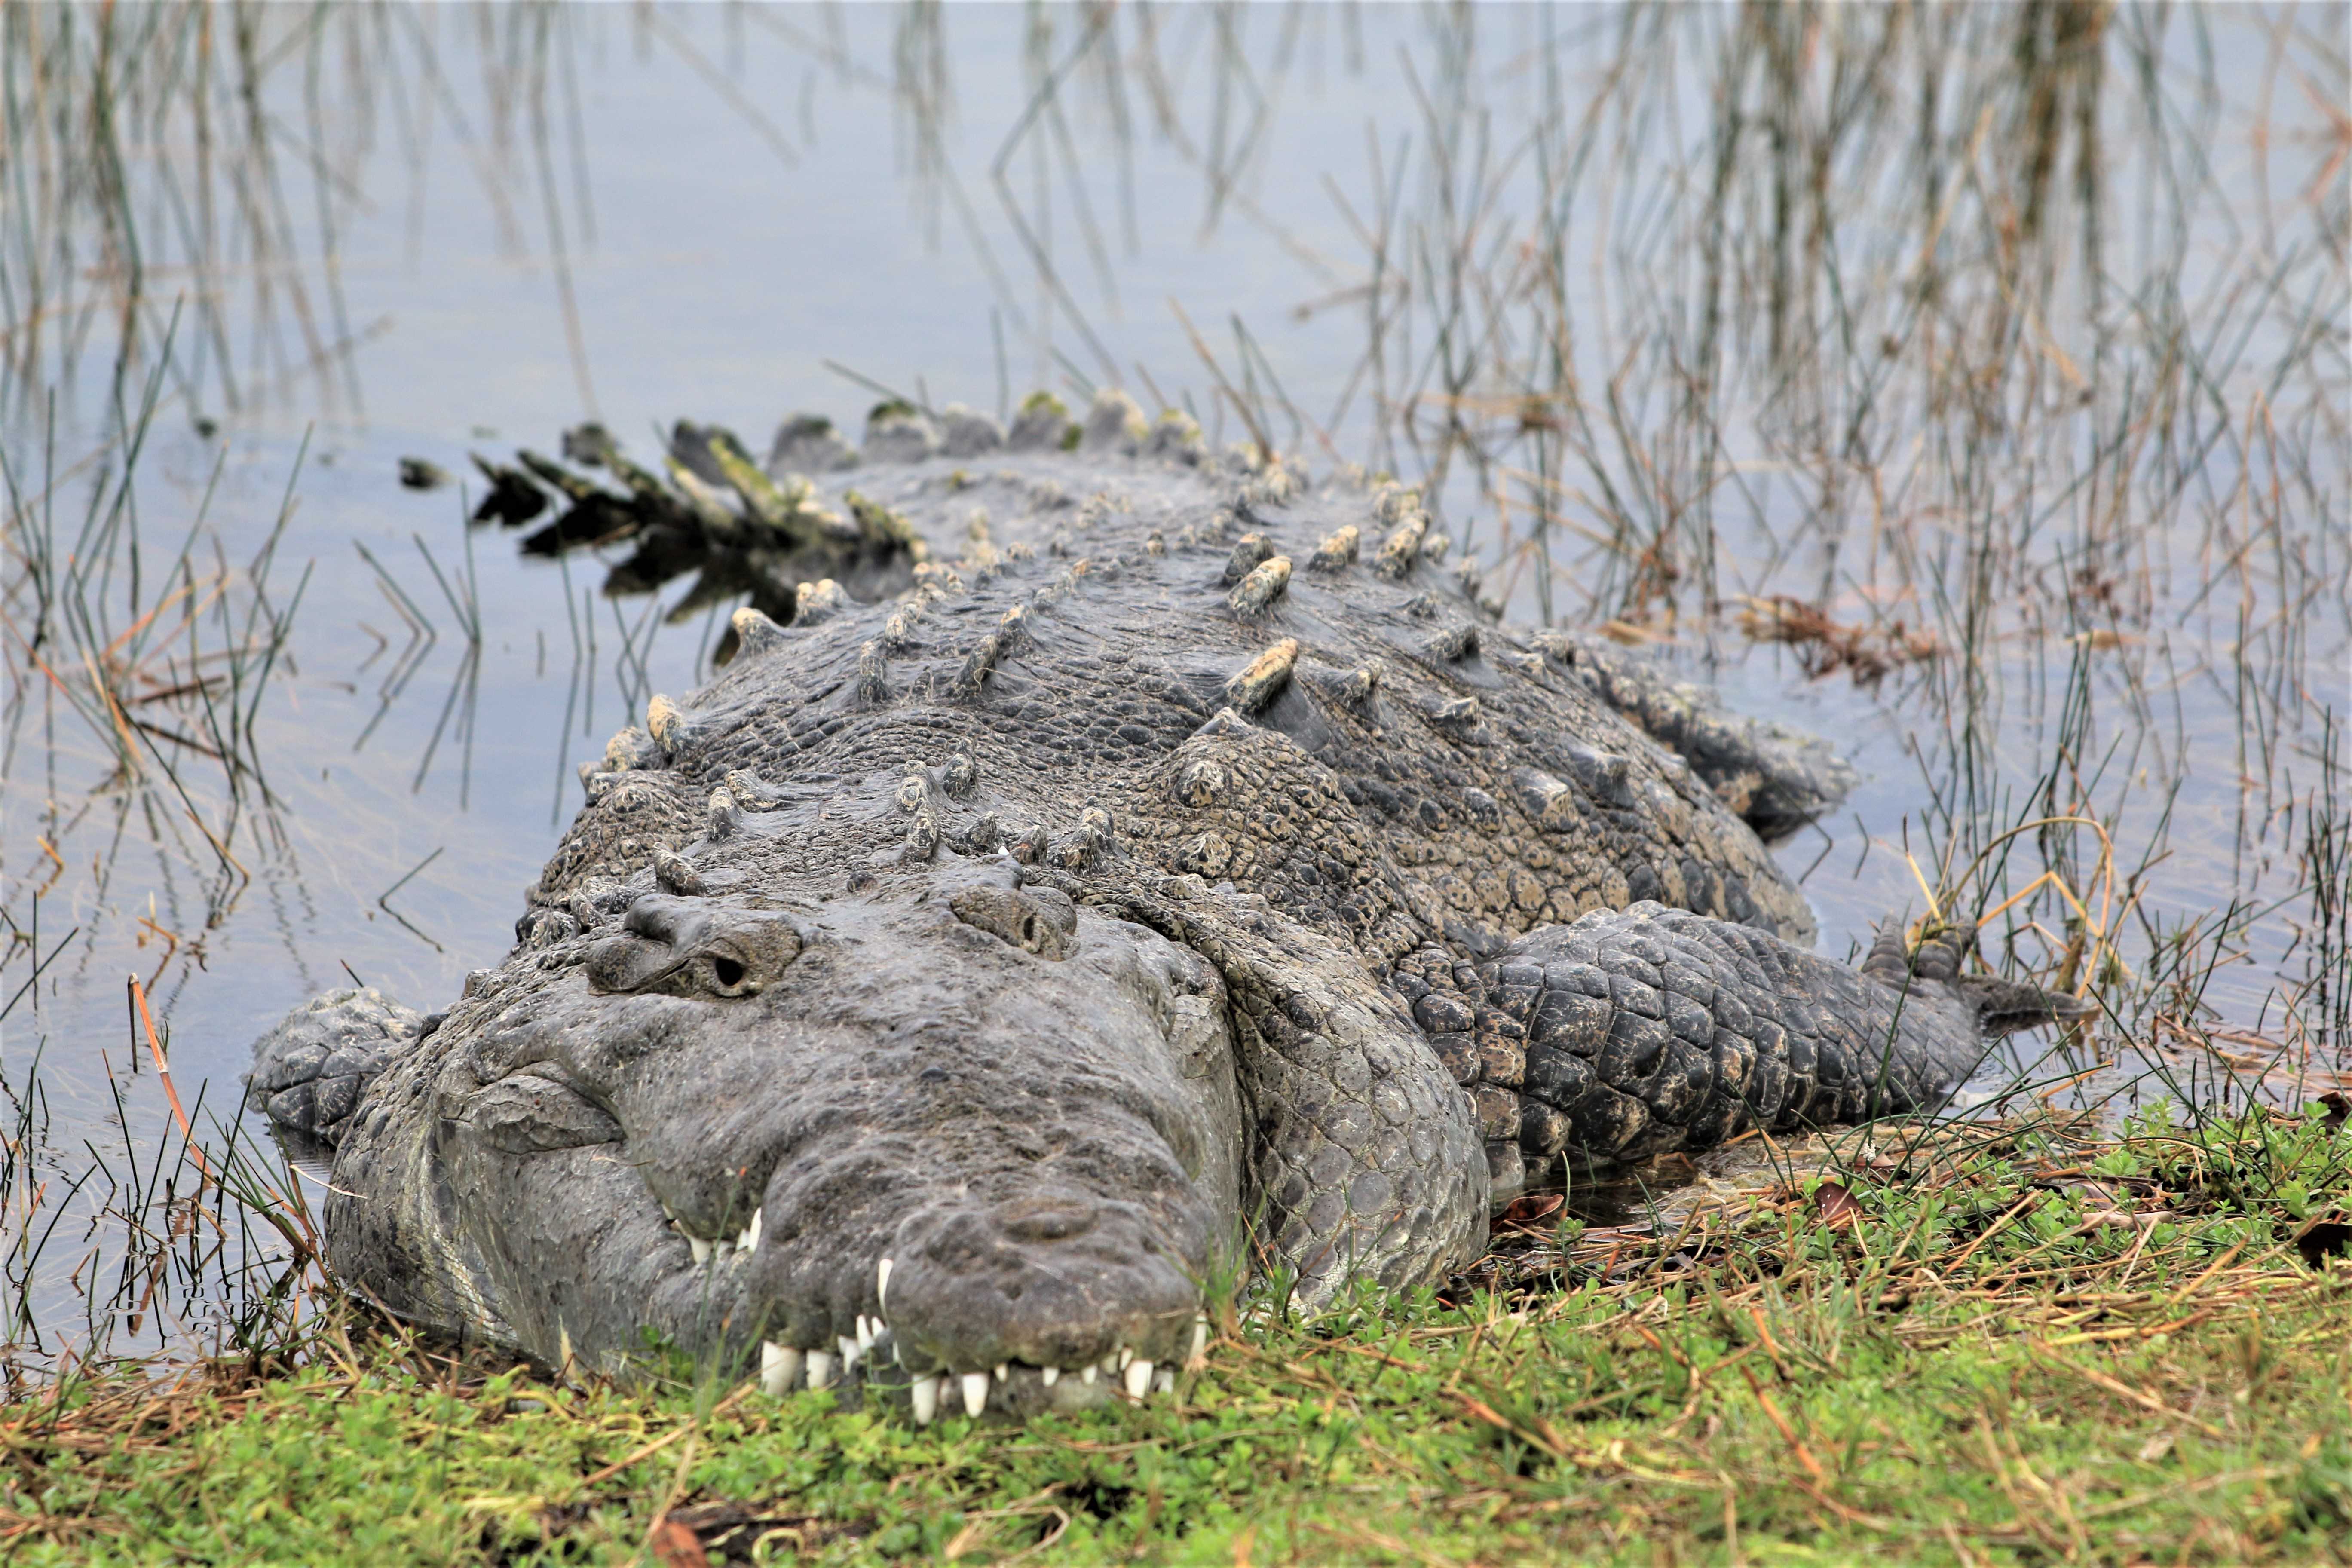 A huge crocodile watching you